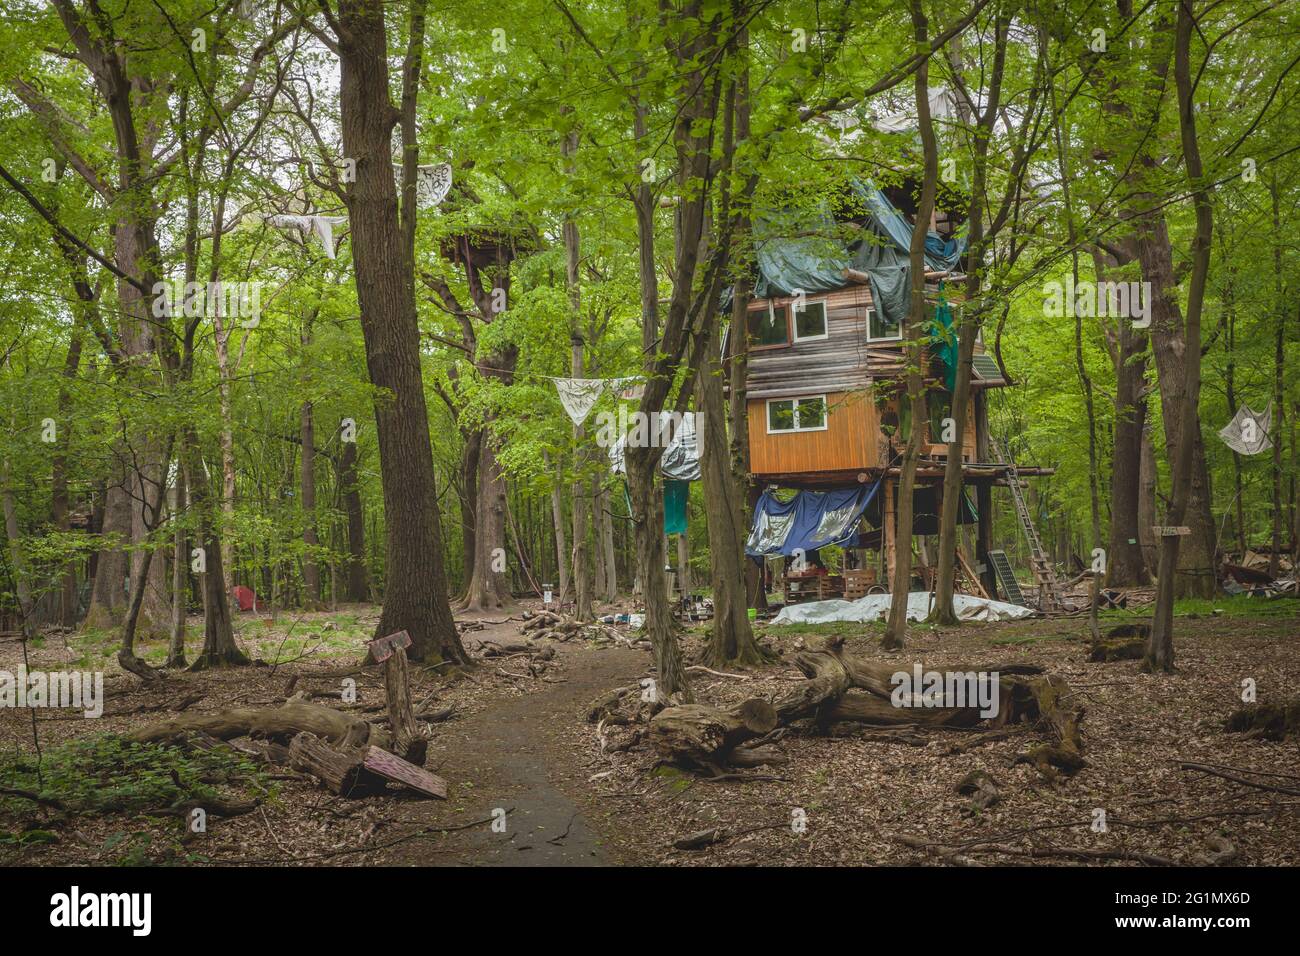 Dettagli natura conservazione attivisti protesta accampamento nella foresta di Hambach Foto Stock